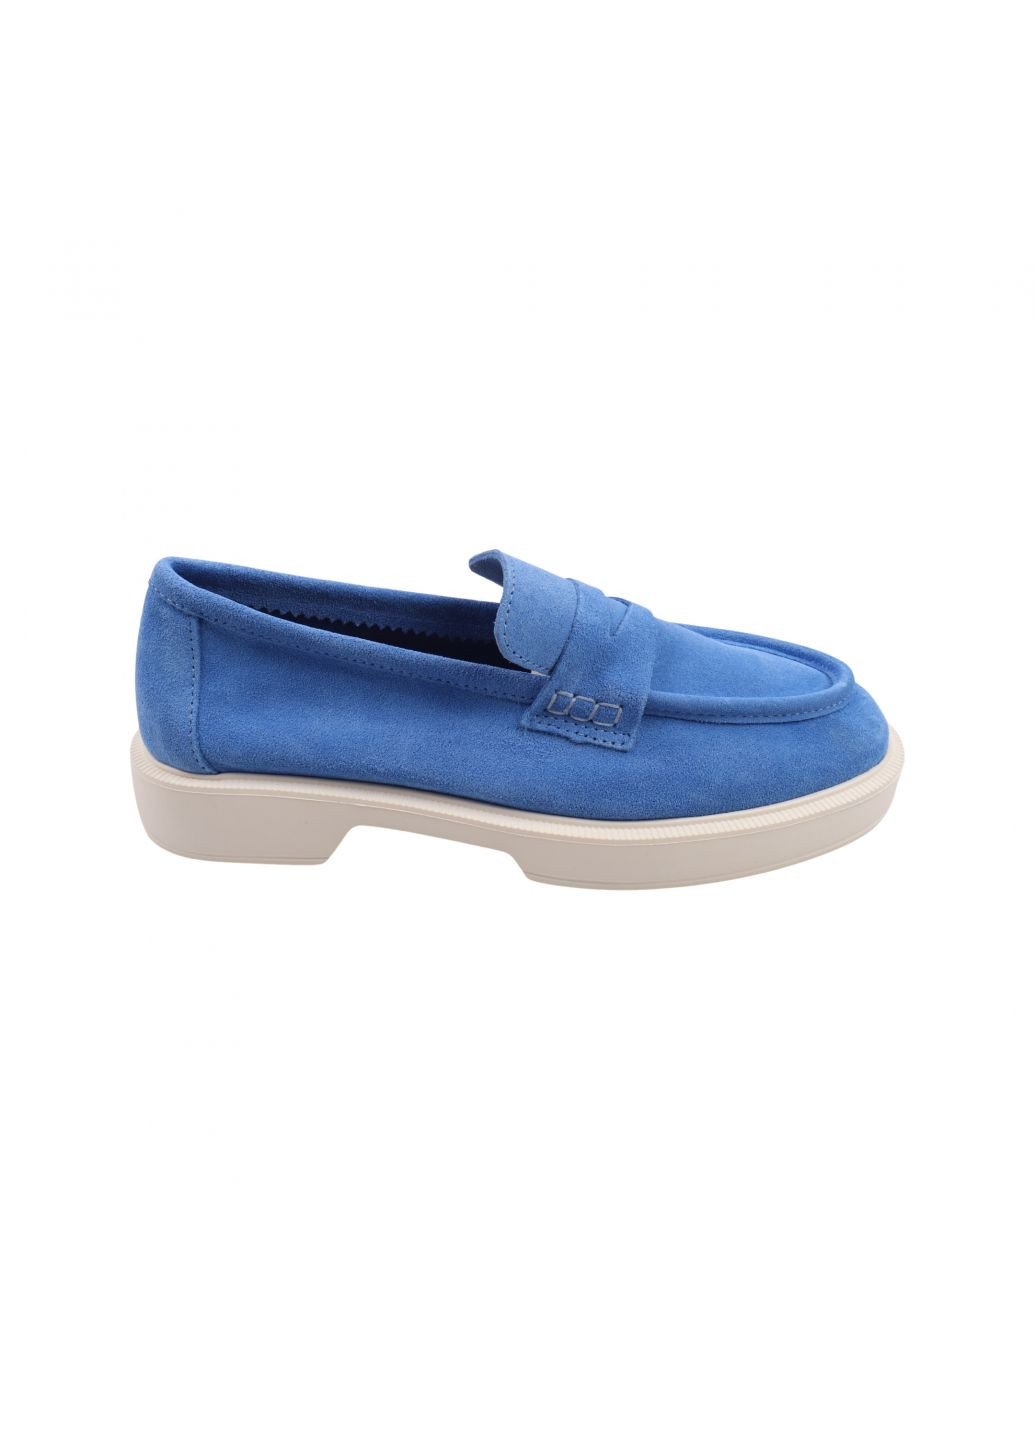 Туфлі жіночі блакитні натуральна замша Tucino 608-23dtc (257933361)